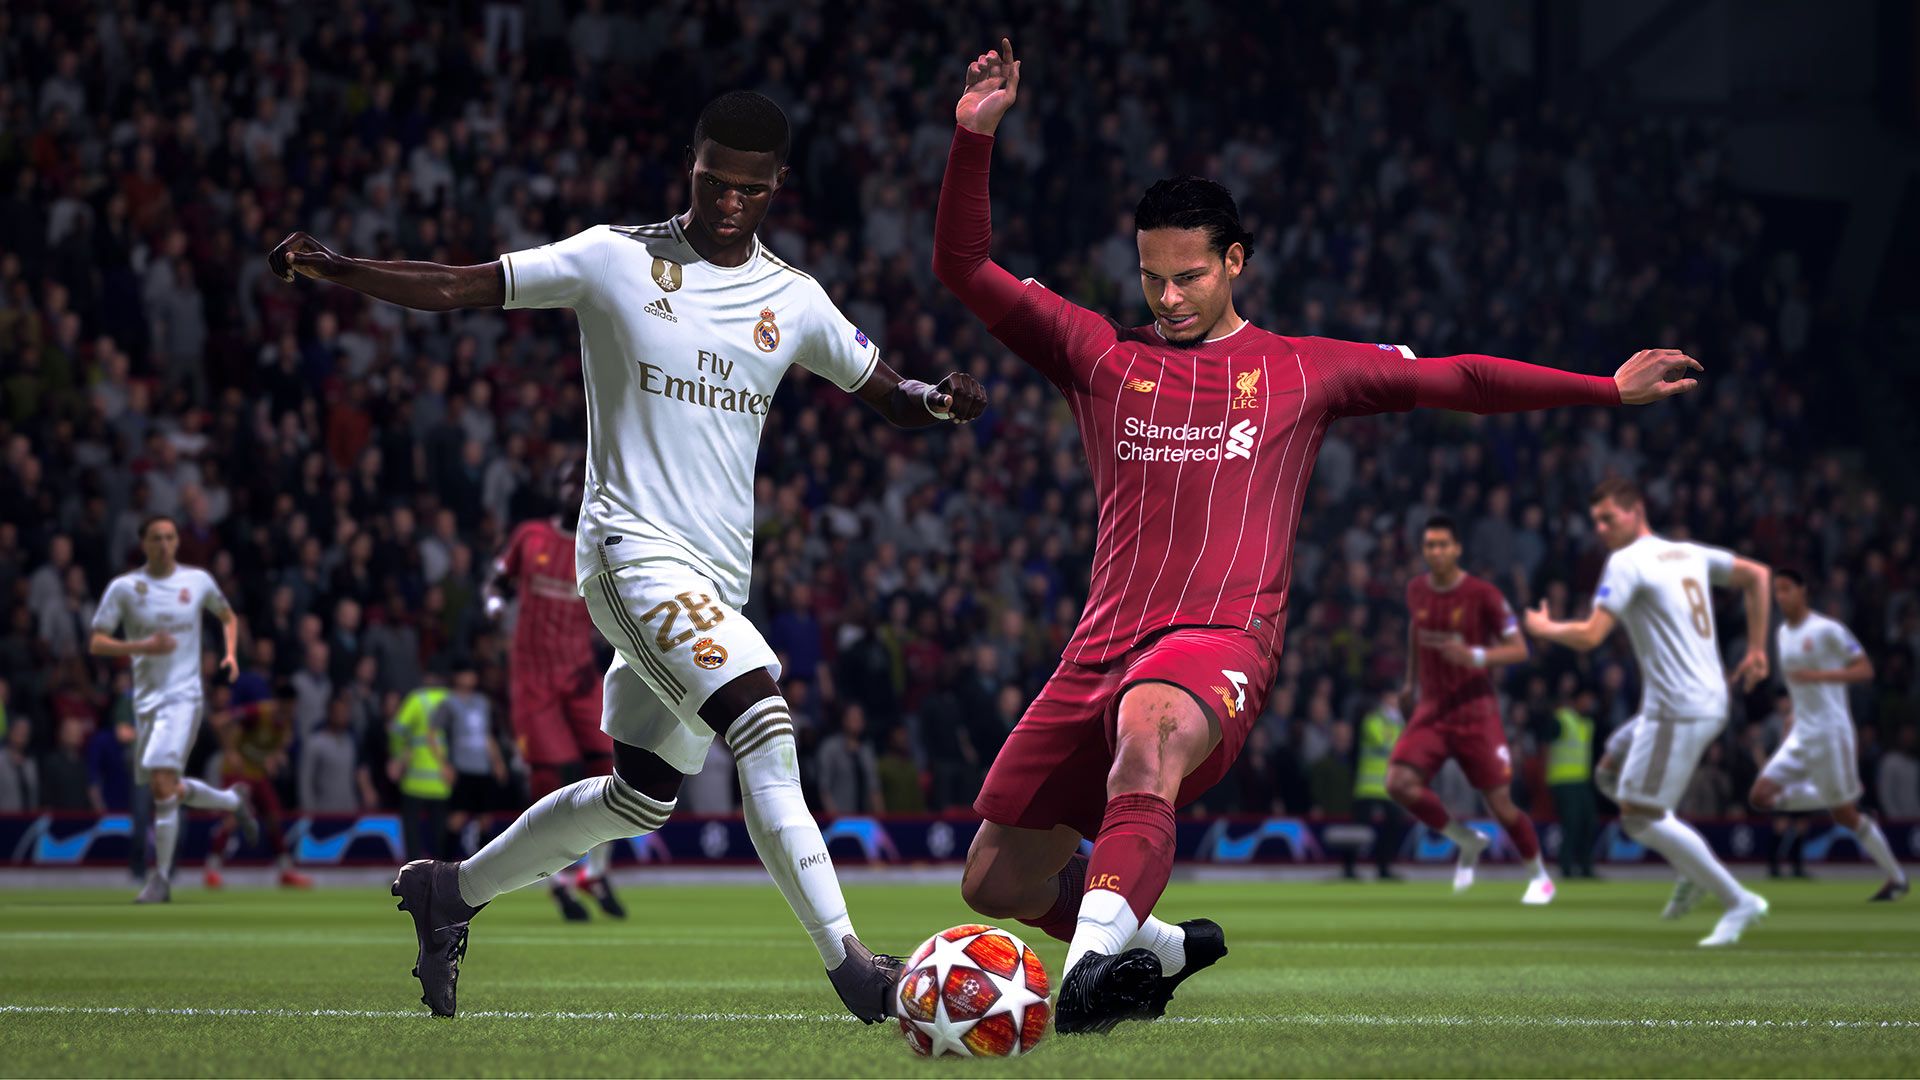 FIFA 21: EA confirms release plans, despite pandemic uncertainty